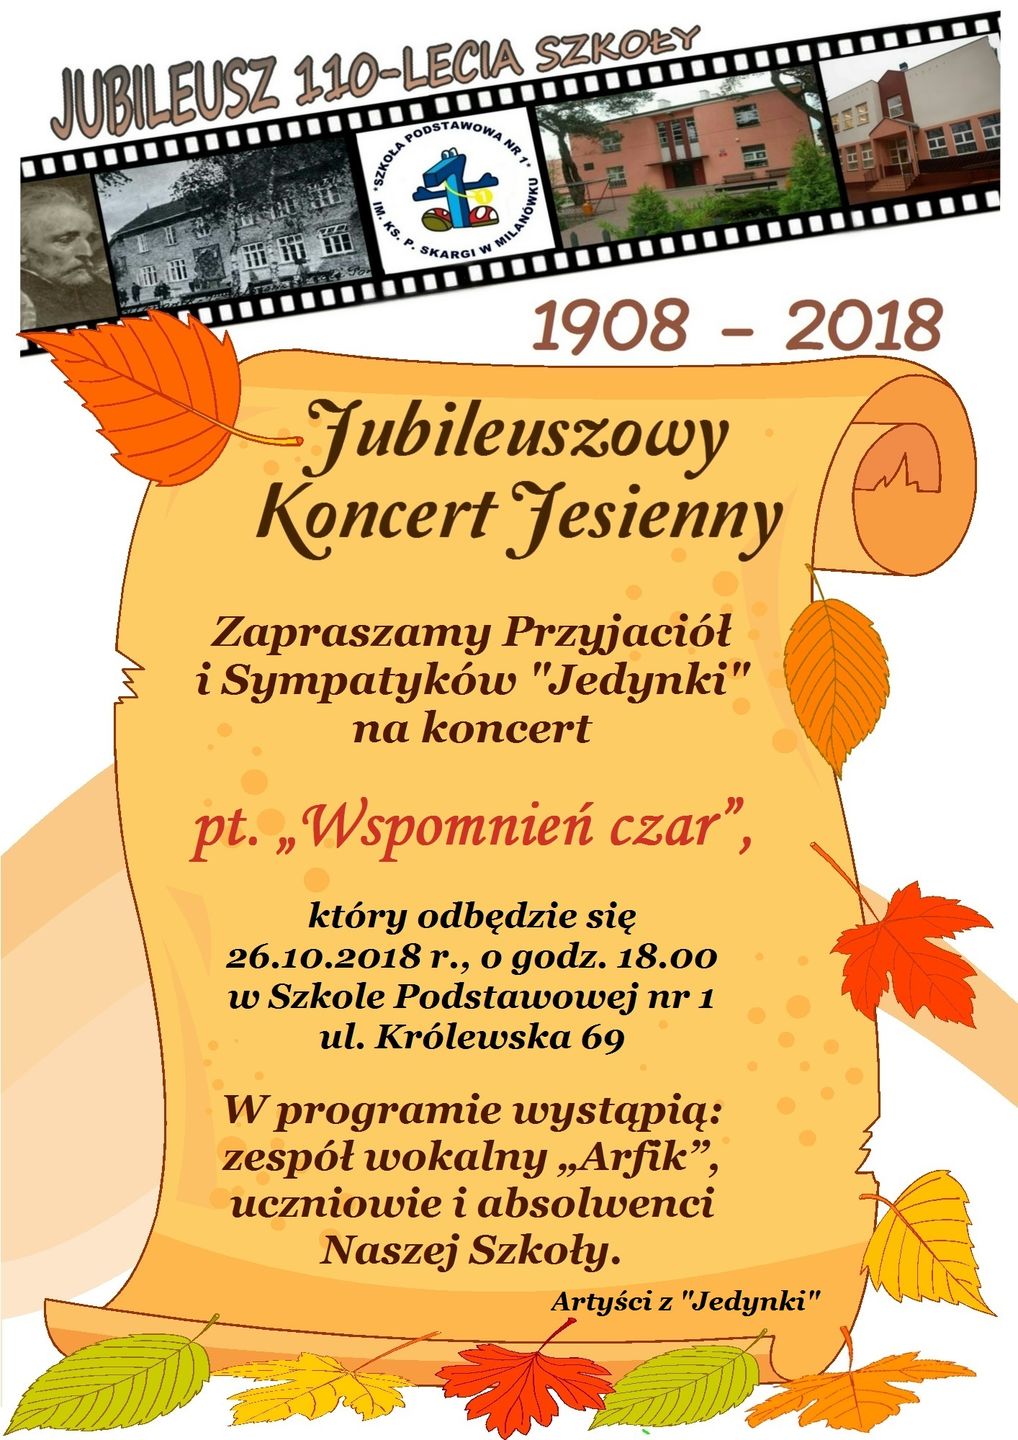 Plakat promujący Jubileuszowy Koncert Jesienny